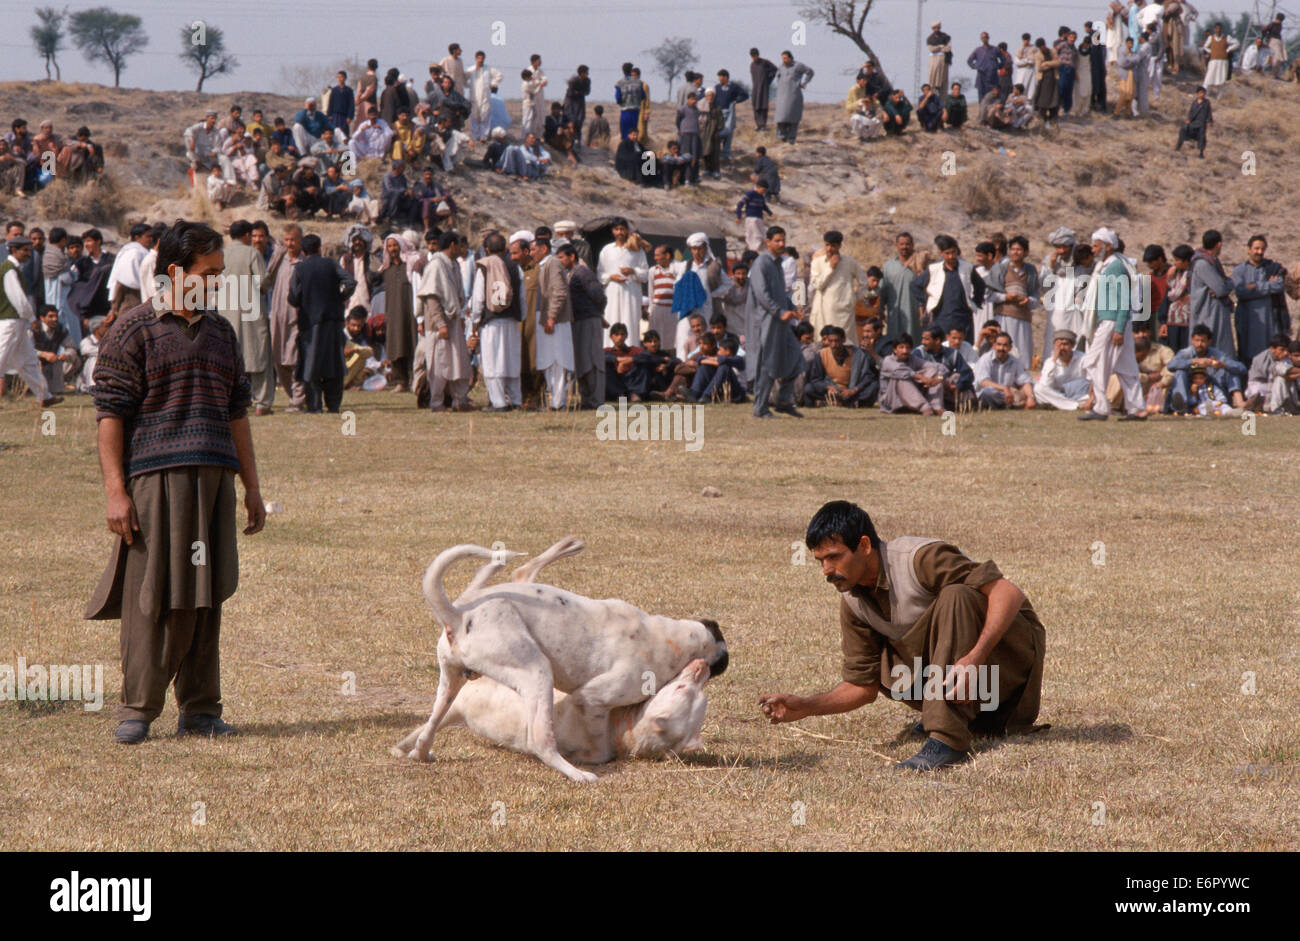 Les combats de chiens. Les deux hommes sont les propriétaires des chiens ( Pakistan) Banque D'Images